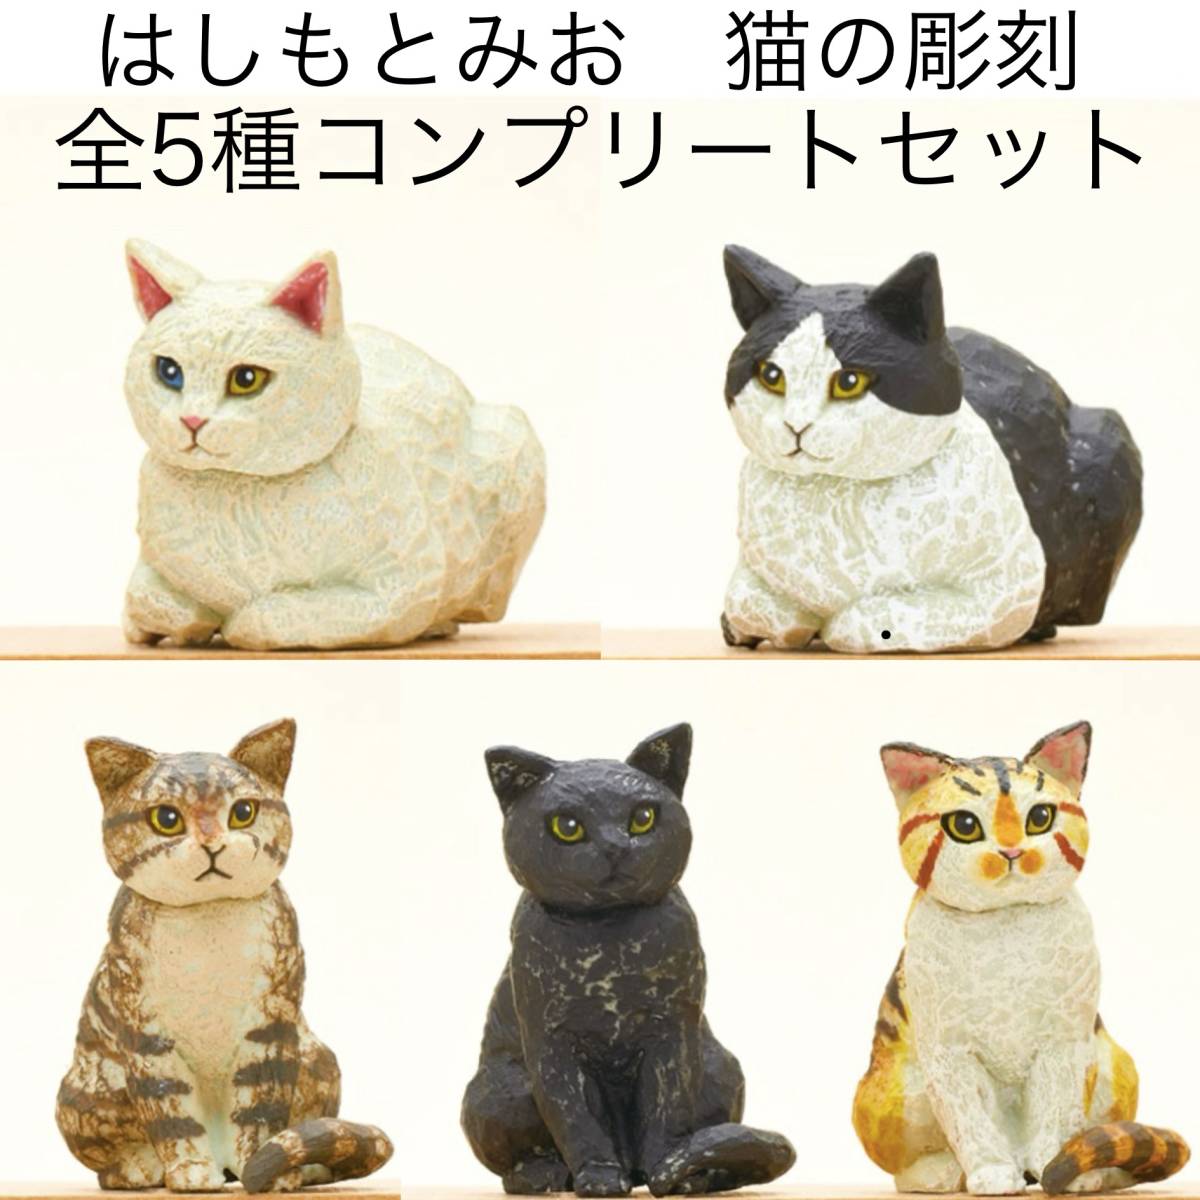 全5種 木彫り彫刻家 はしもとみお 猫の彫刻 コンプリート セット ミケ クロ キジトラ シロ ハチワレ ネコ コンプ カプセルトイ (未使用品)